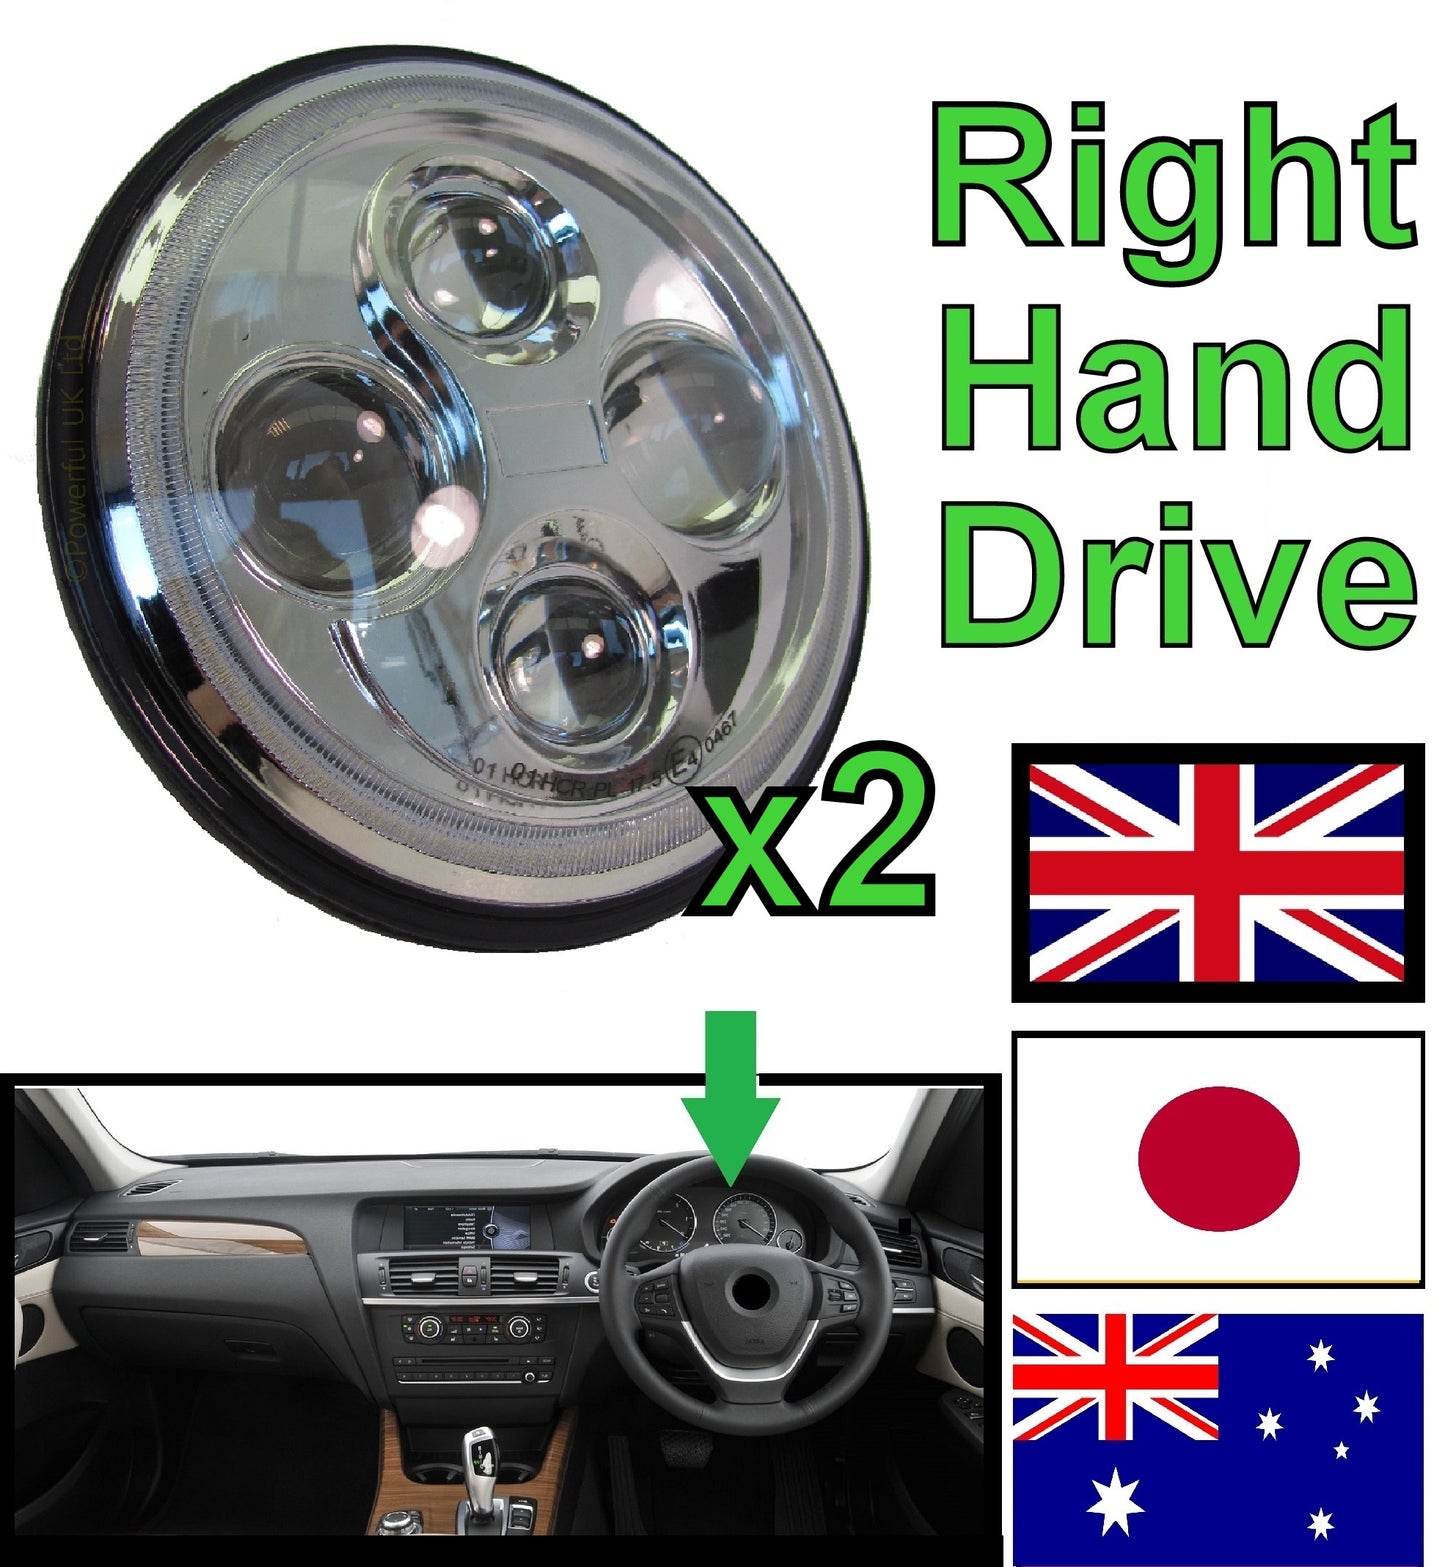 Headlights - Full LED - Chrome - RHD for Land Rover Defender